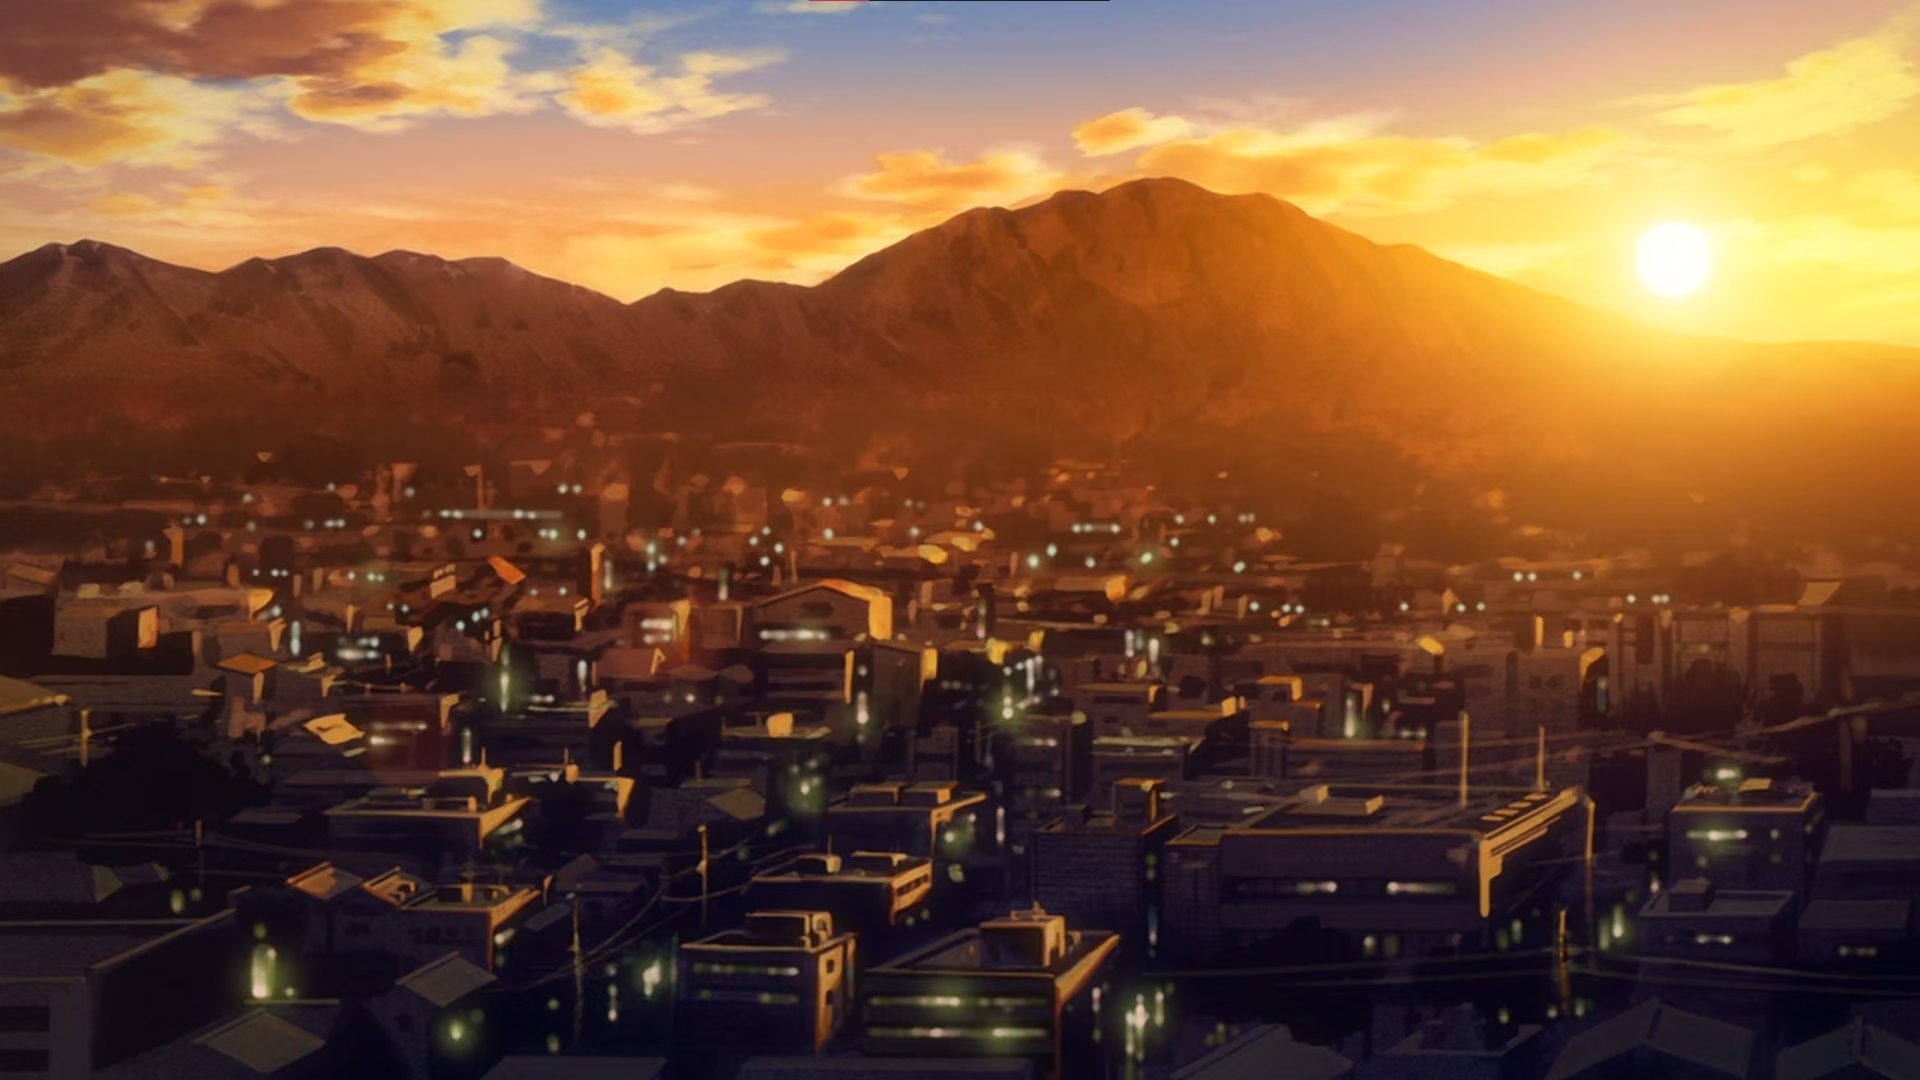 Sự kết hợp của phong cảnh đô thị trong anime và hoàng hôn chắc chắn sẽ làm bạn phải trầm trồ. Hãy xem bức ảnh này để thưởng thức một màn trình diễn tuyệt vời của wallpaper anime với phong cảnh đô thị rực rỡ mà man mát.